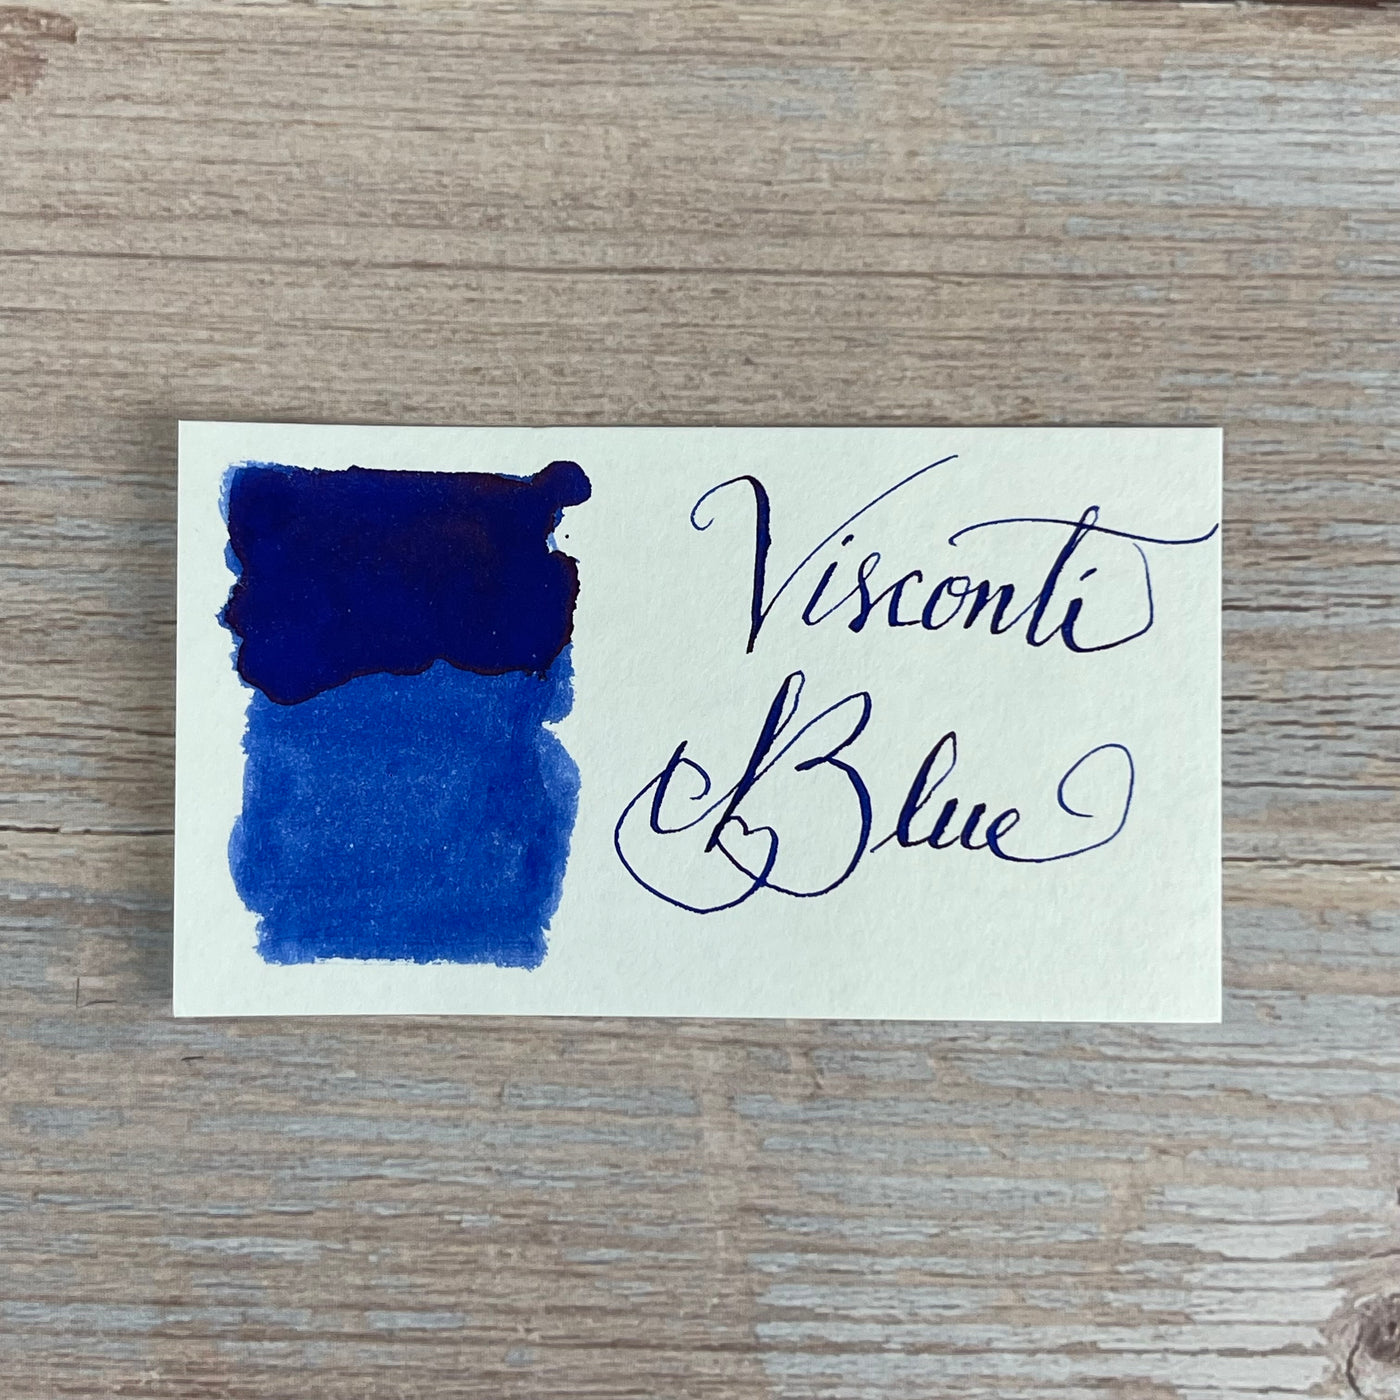 Visconti Blue - 50ml Bottled Ink